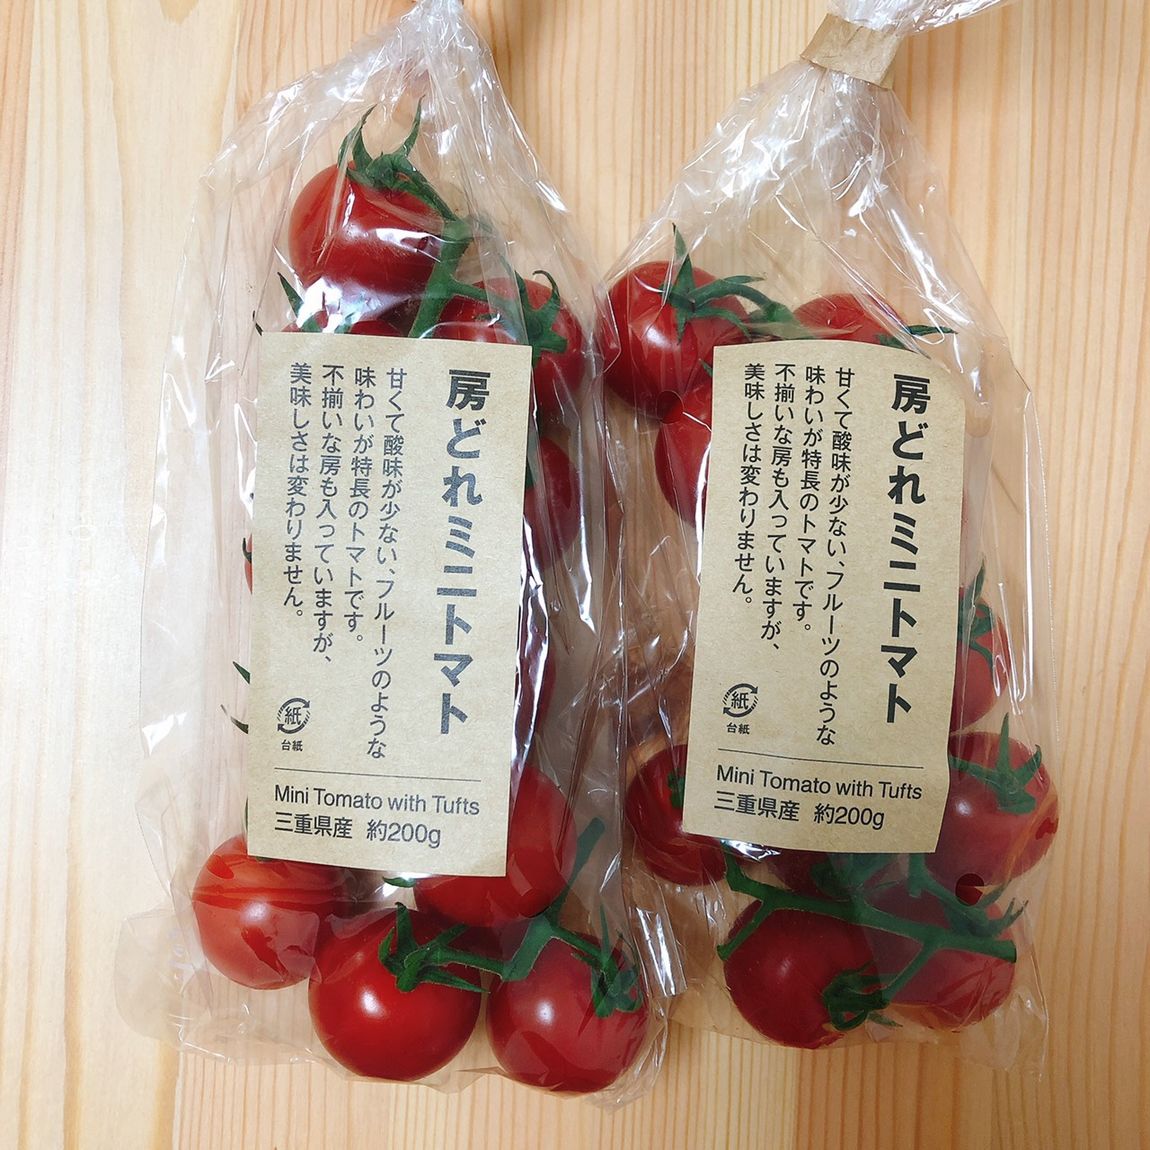 房どれミニトマト入荷のお知らせ【イオンモール大高】